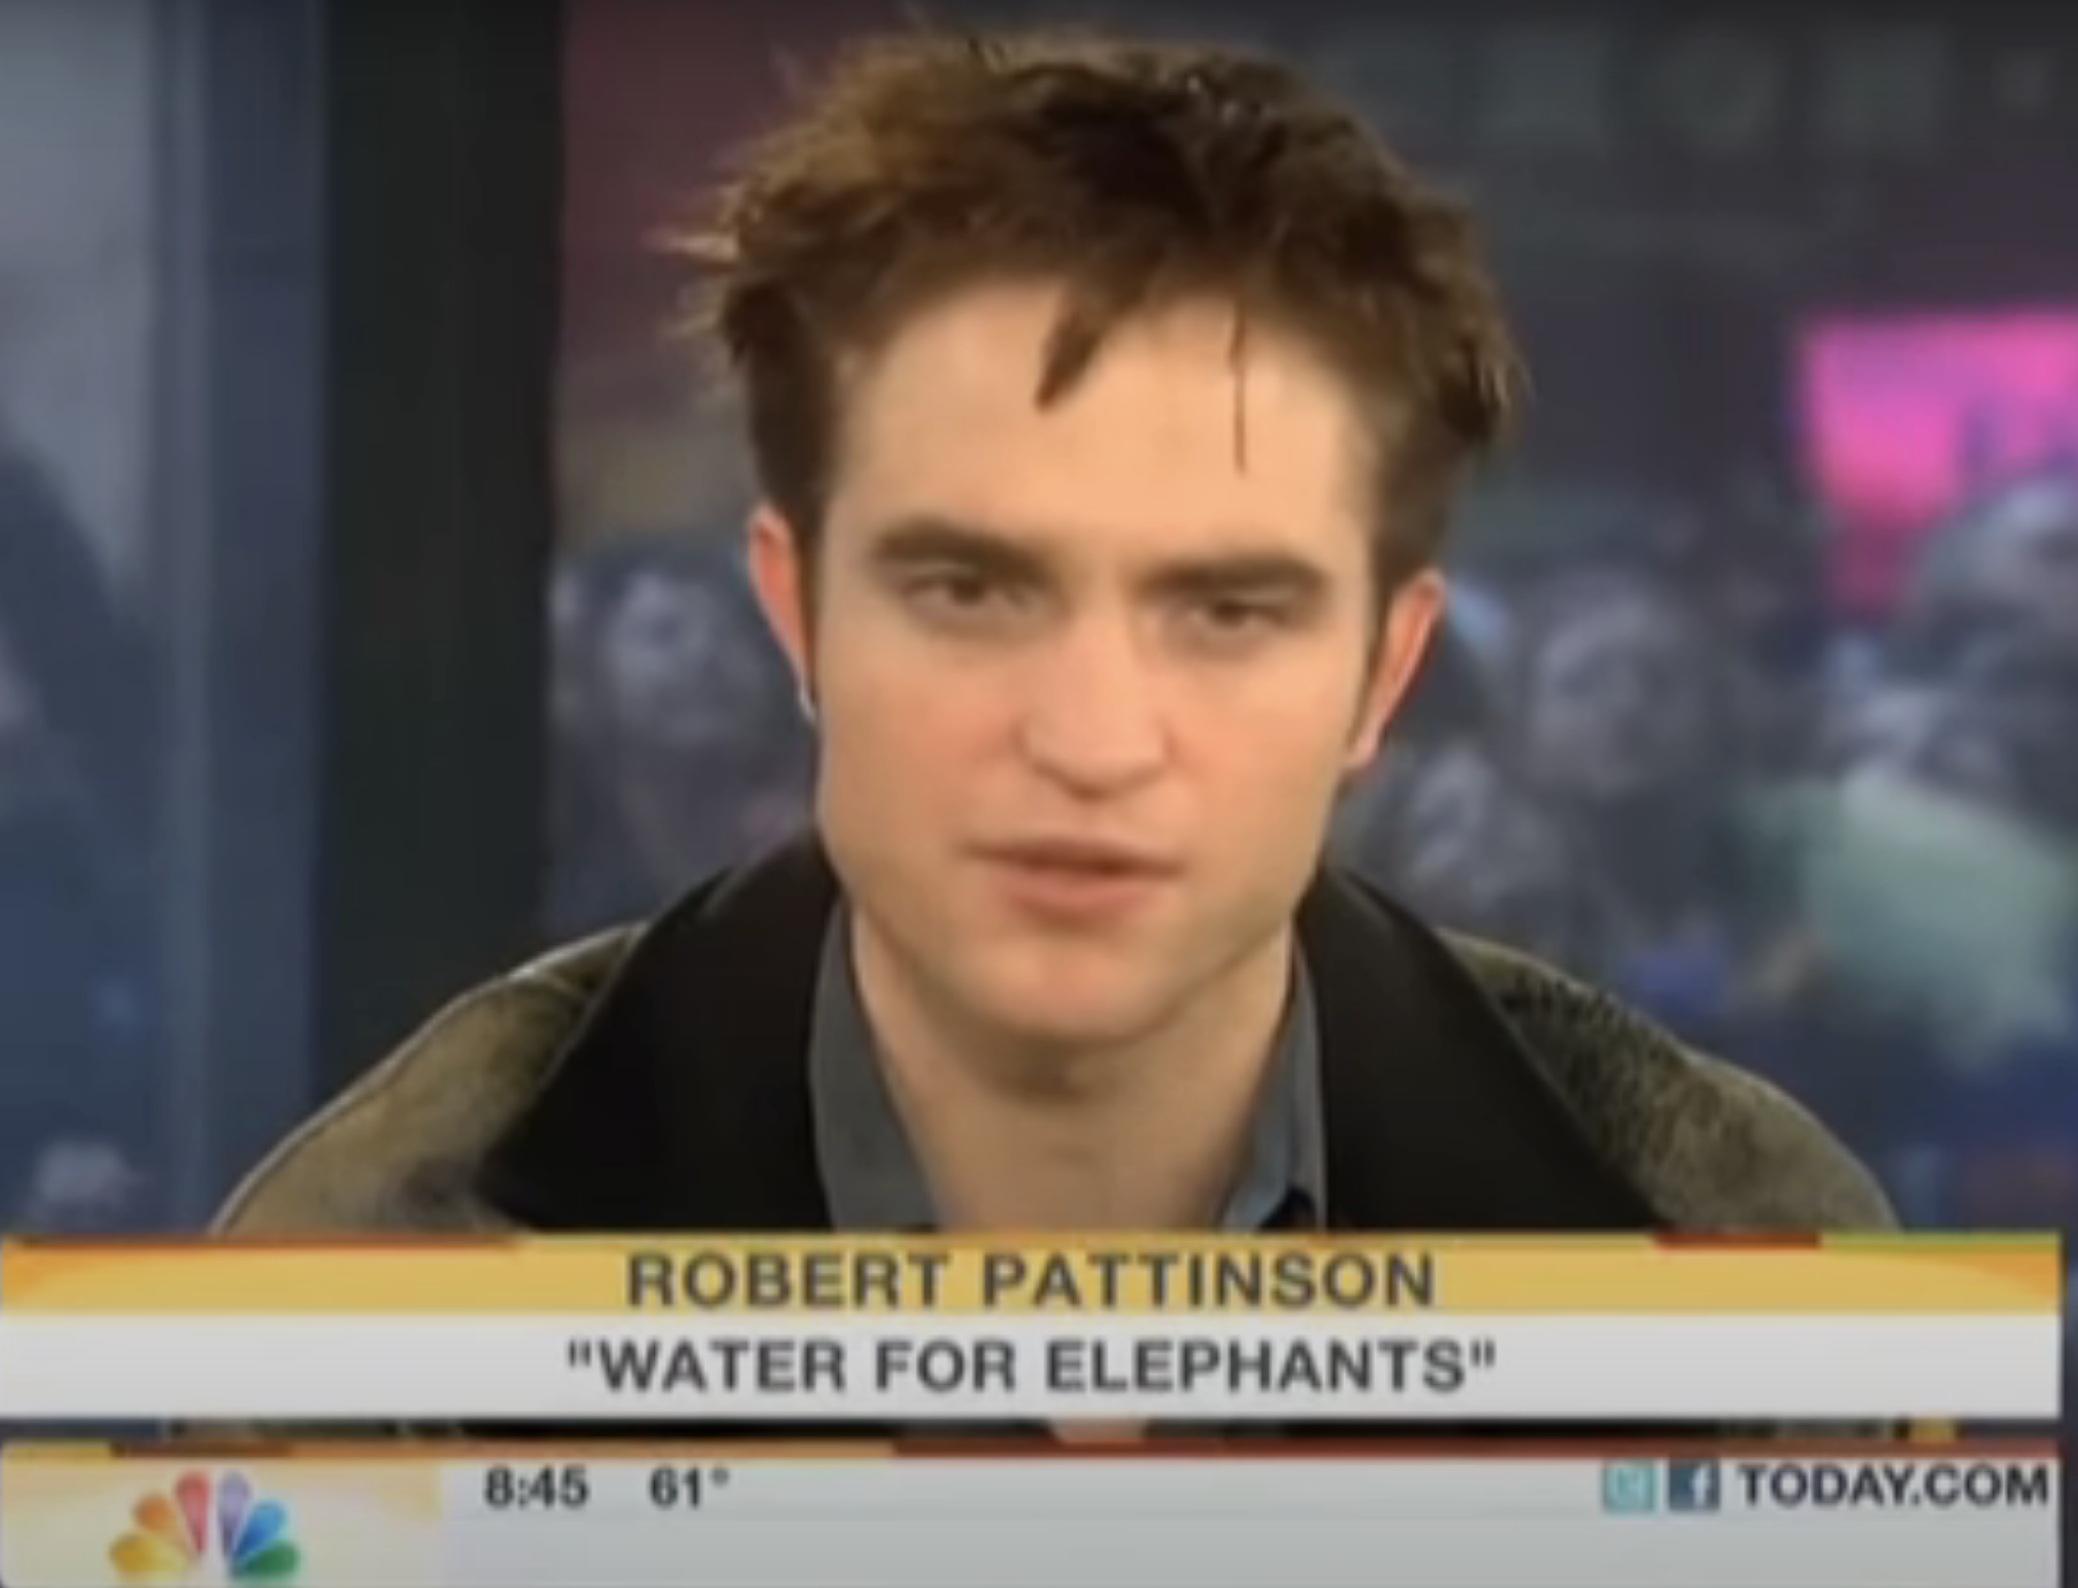 Robert Pattinson in an interview